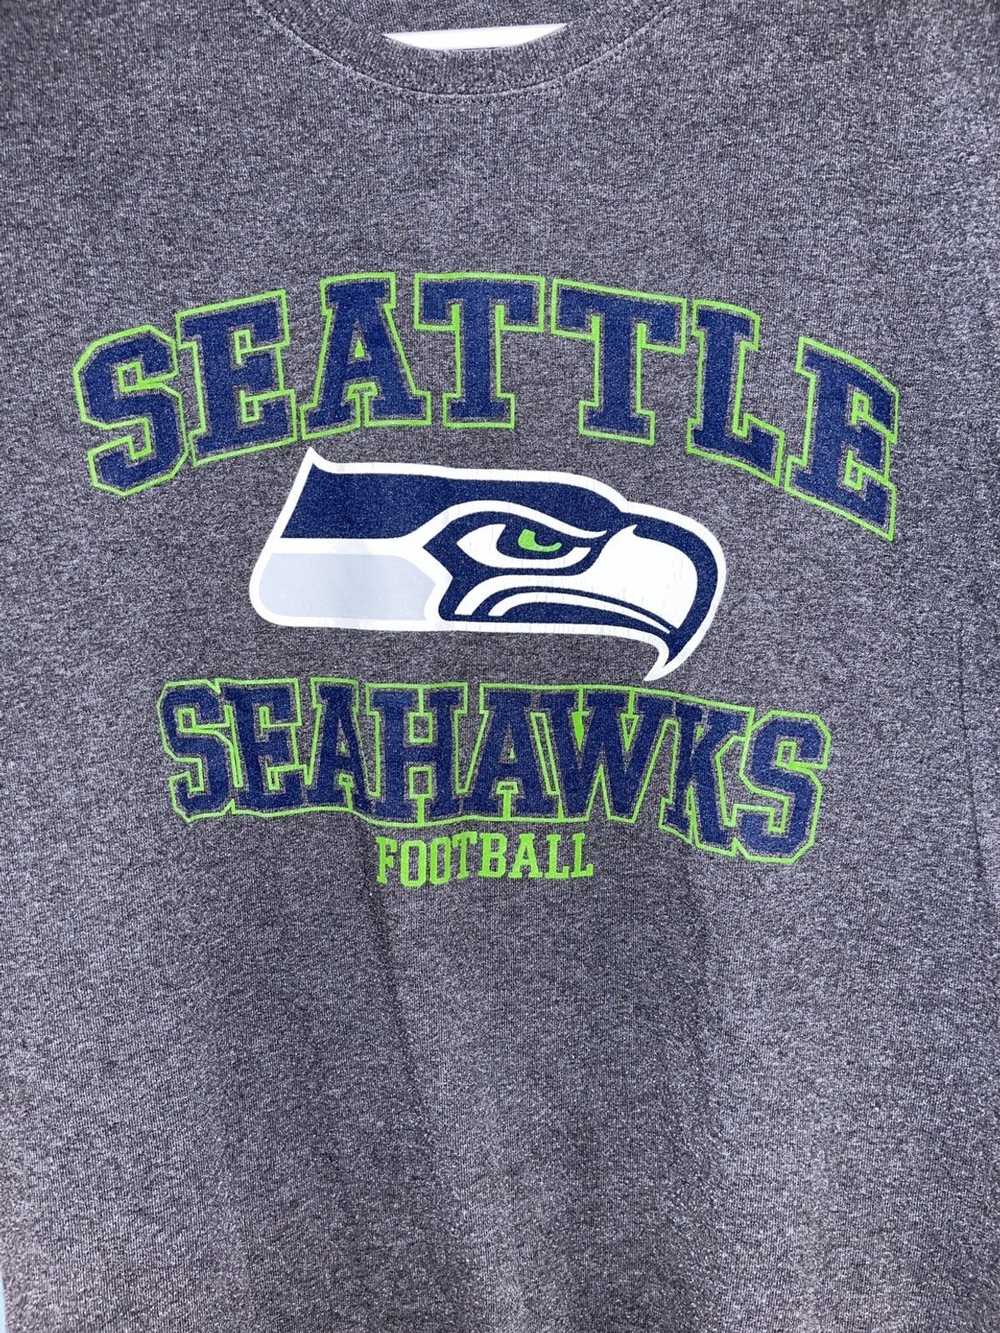 Sportswear Seattle Seahawks - image 2